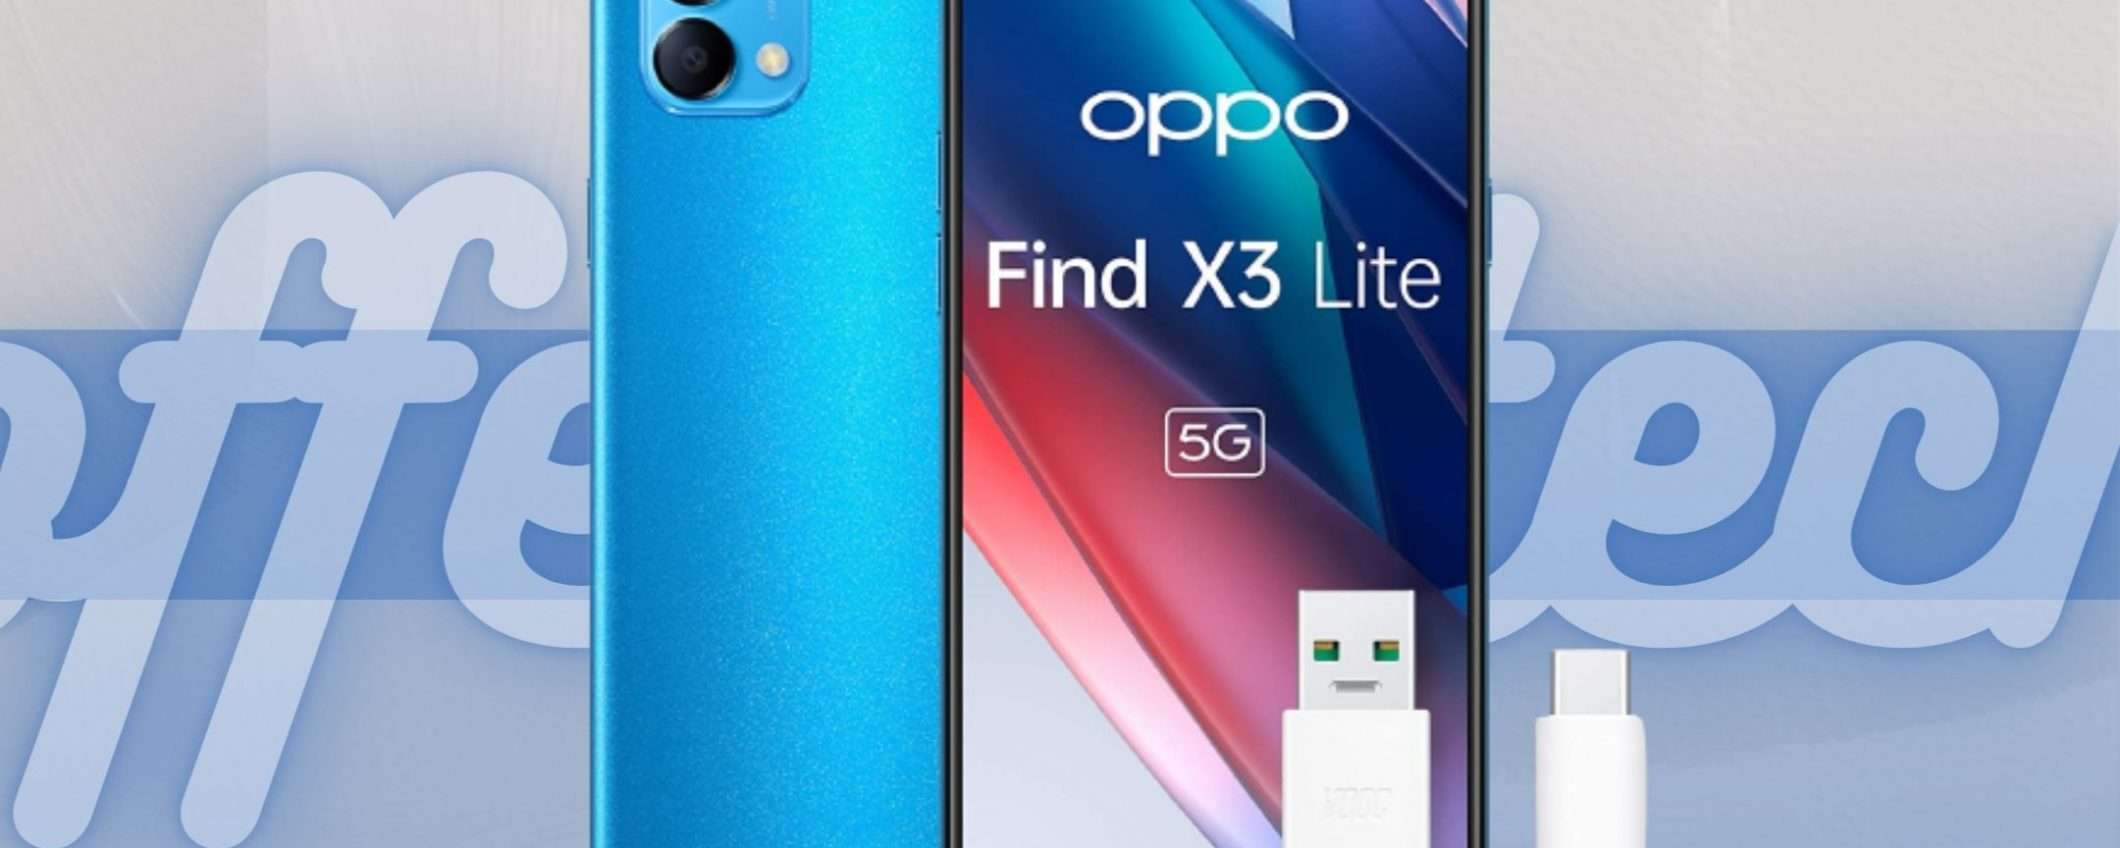 OPPO Find X3 Lite ti stupisce con la sua tecnologia (-120€)